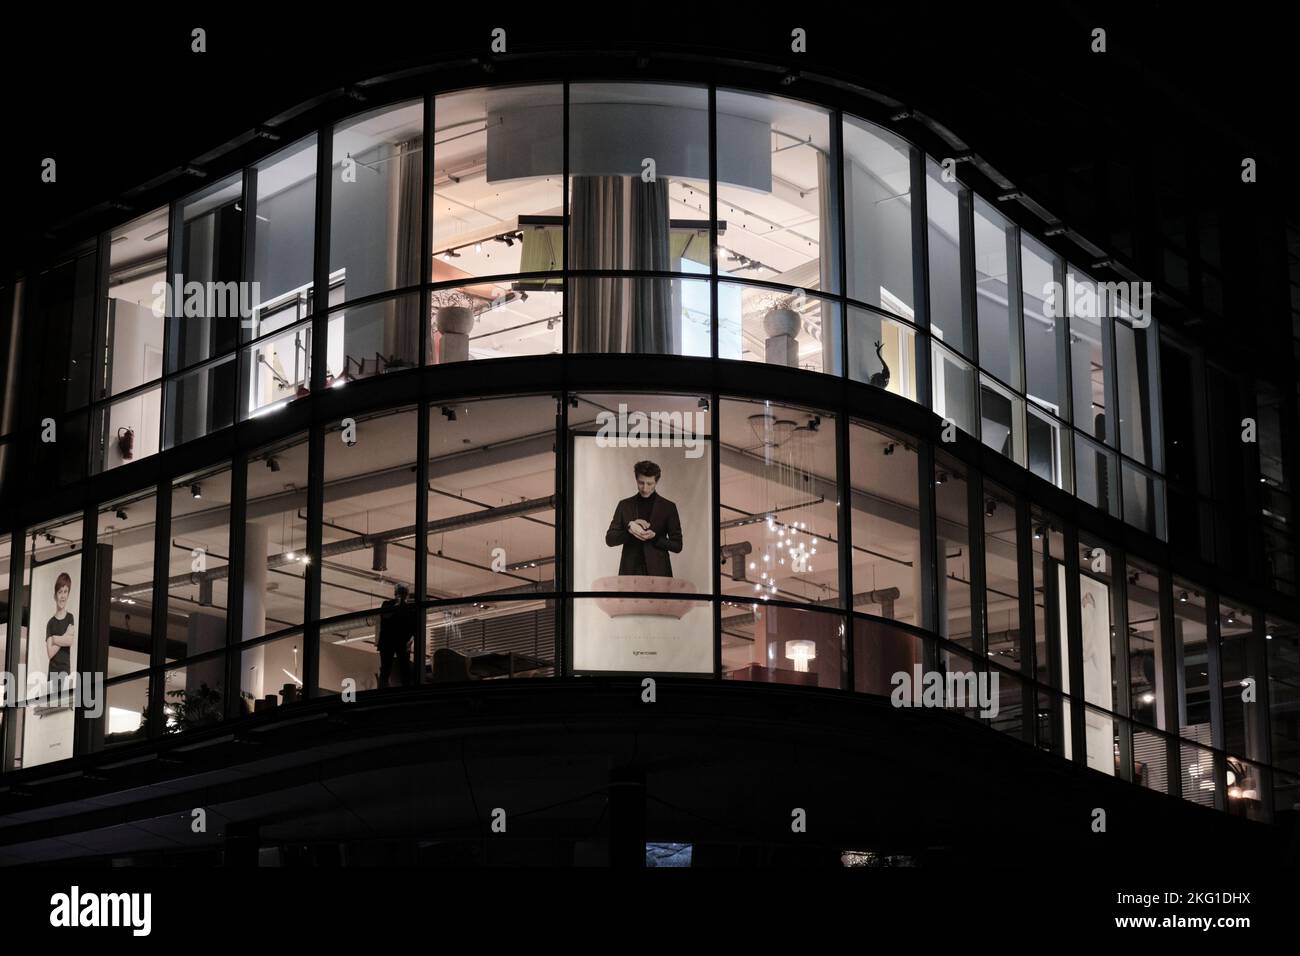 Eine dunkle Nacht in Berlin - Berliner Nachtarchitektur. Gewerbliches architektonisches Gebäude zur Abendzeit, Einkaufszentrum mit Anzeige im Fenster. Stockfoto